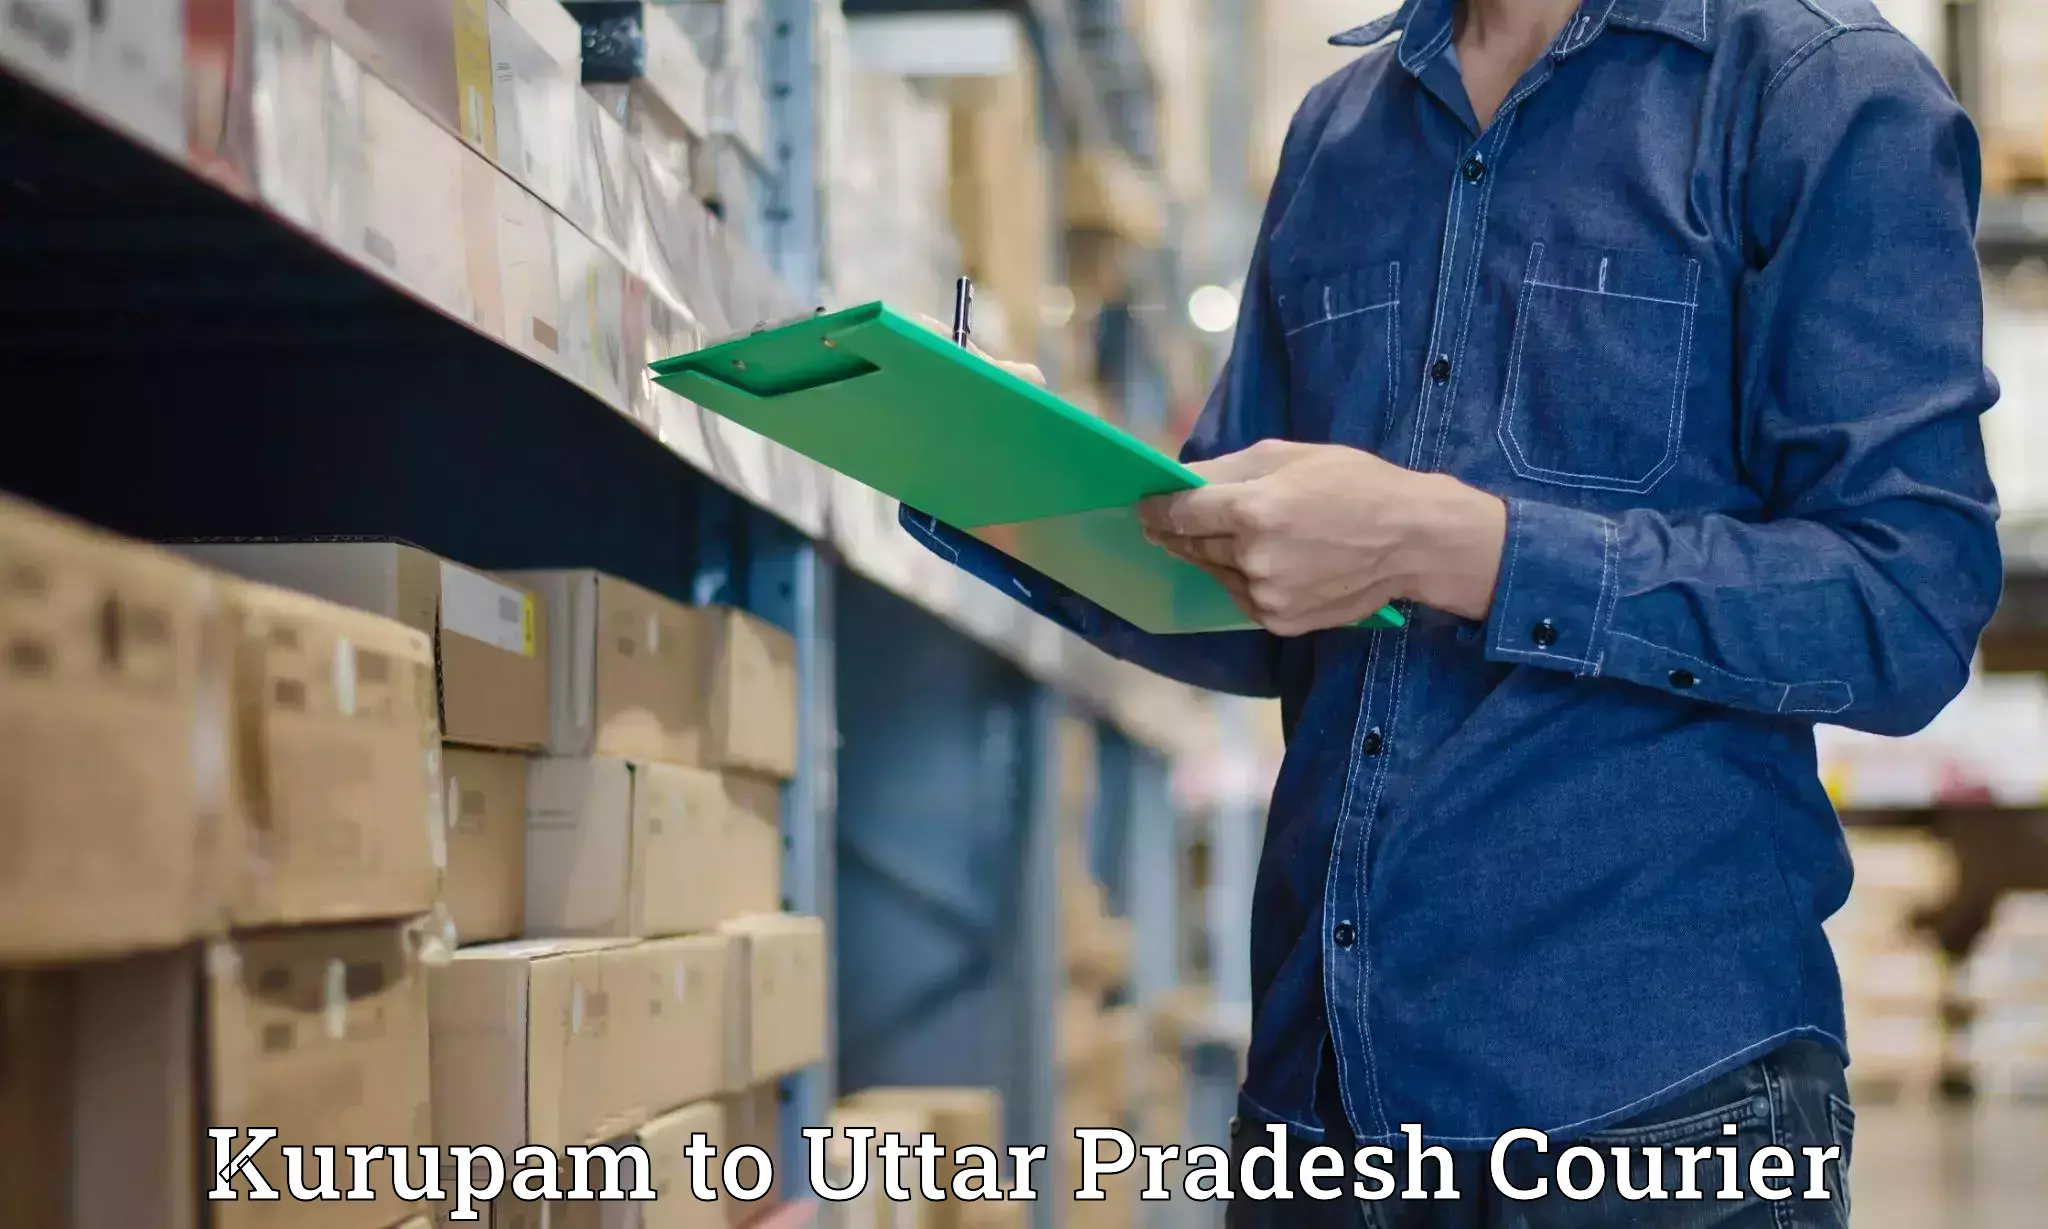 Local courier options Kurupam to Aligarh Muslim University